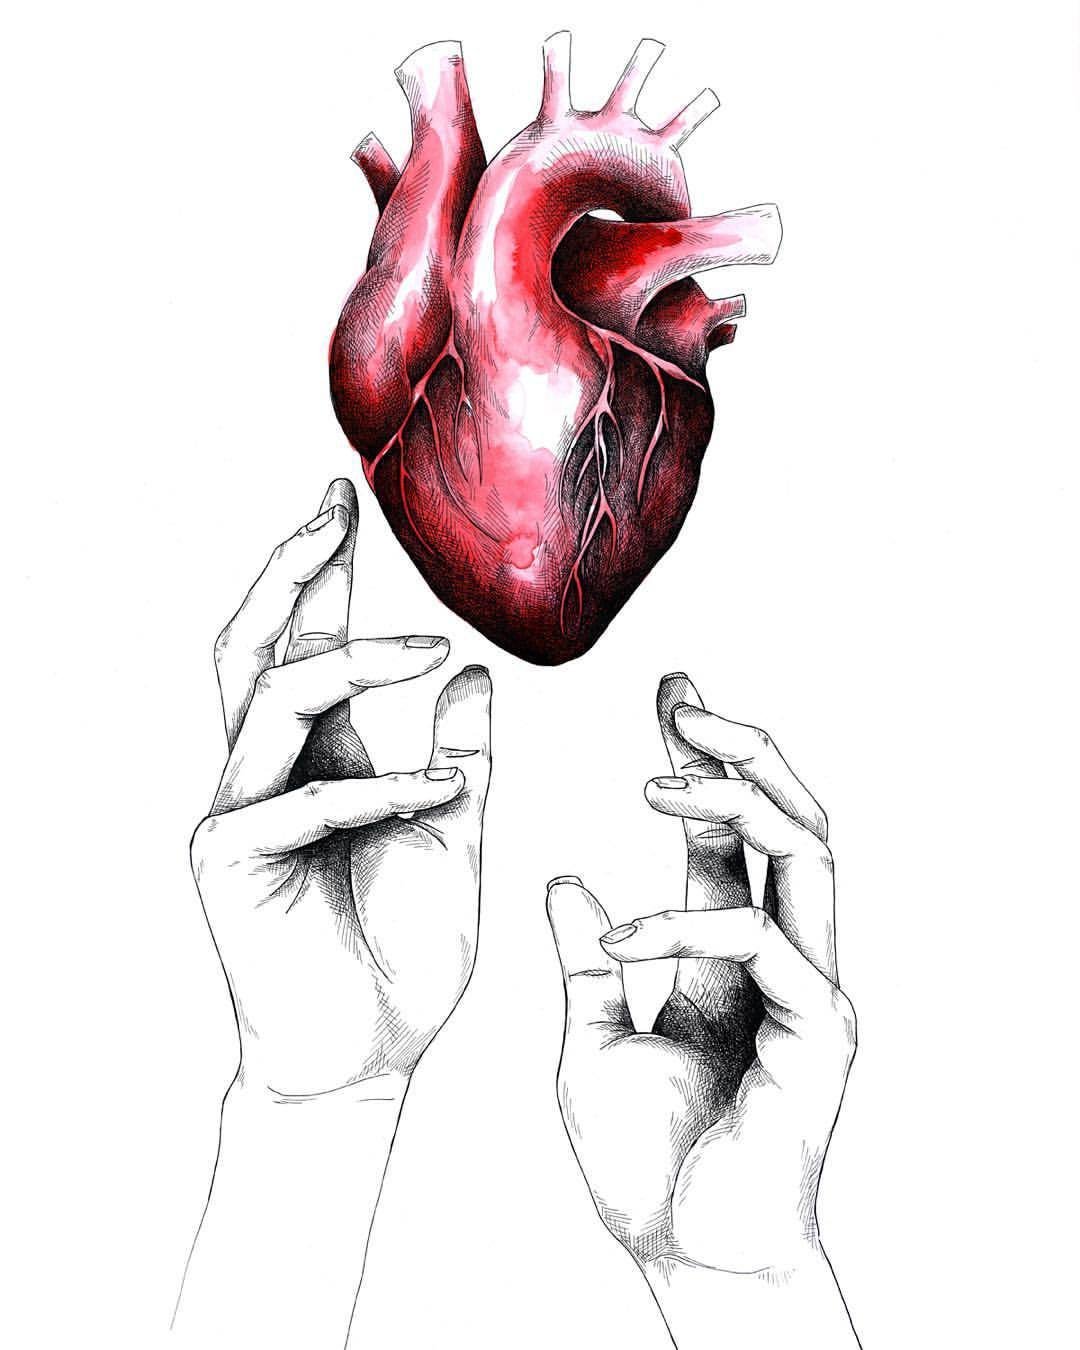 Найти живое сердце. Сердце арт. Человеческое сердце в руке. Человеческонсердце в руке.